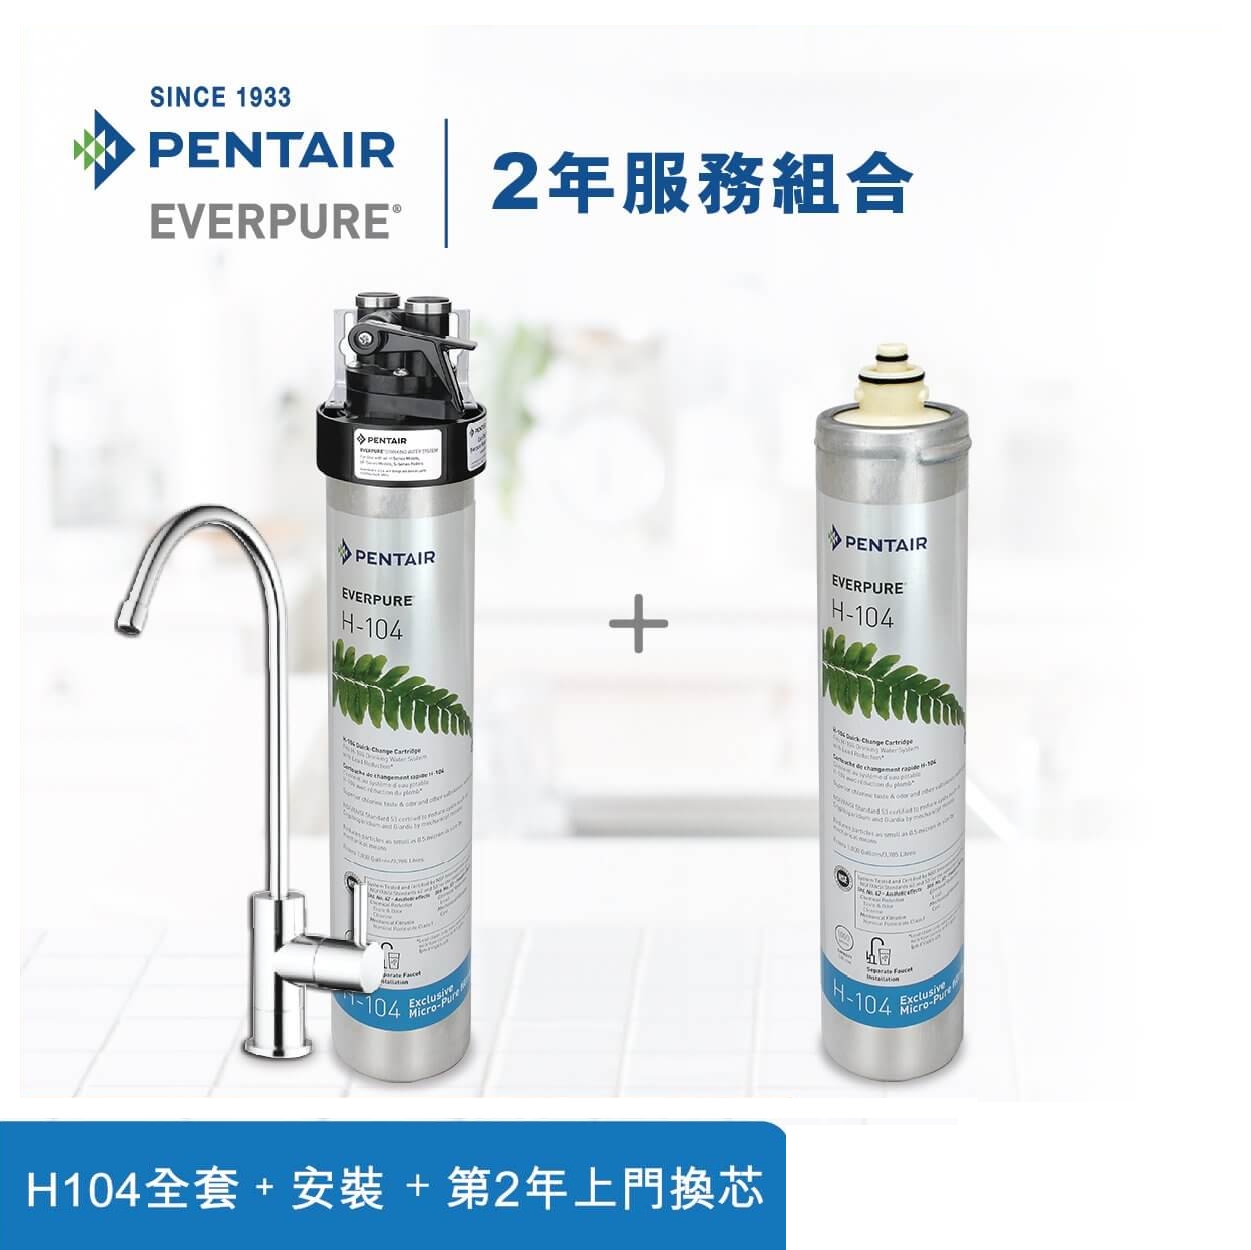 Hong Kong Water Solution Limited